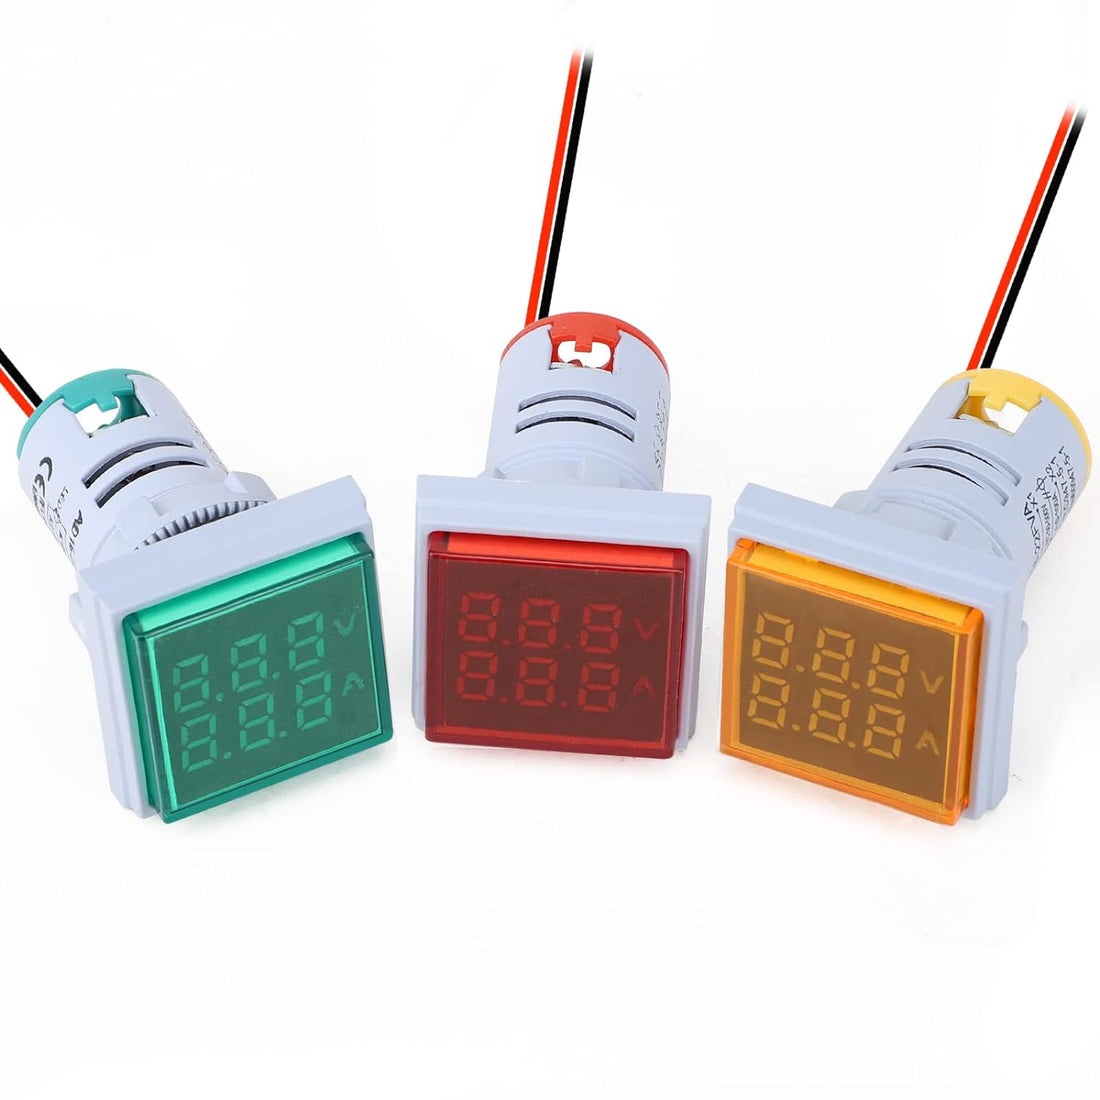 DROK AC Volt Amp Tester, 3pcs AC 50-500V 100A Voltage Current Monitor Digital LED Display Voltmeter 110v 220v Volt Detetor Green Red Yellow Signal Indicator Light Panel